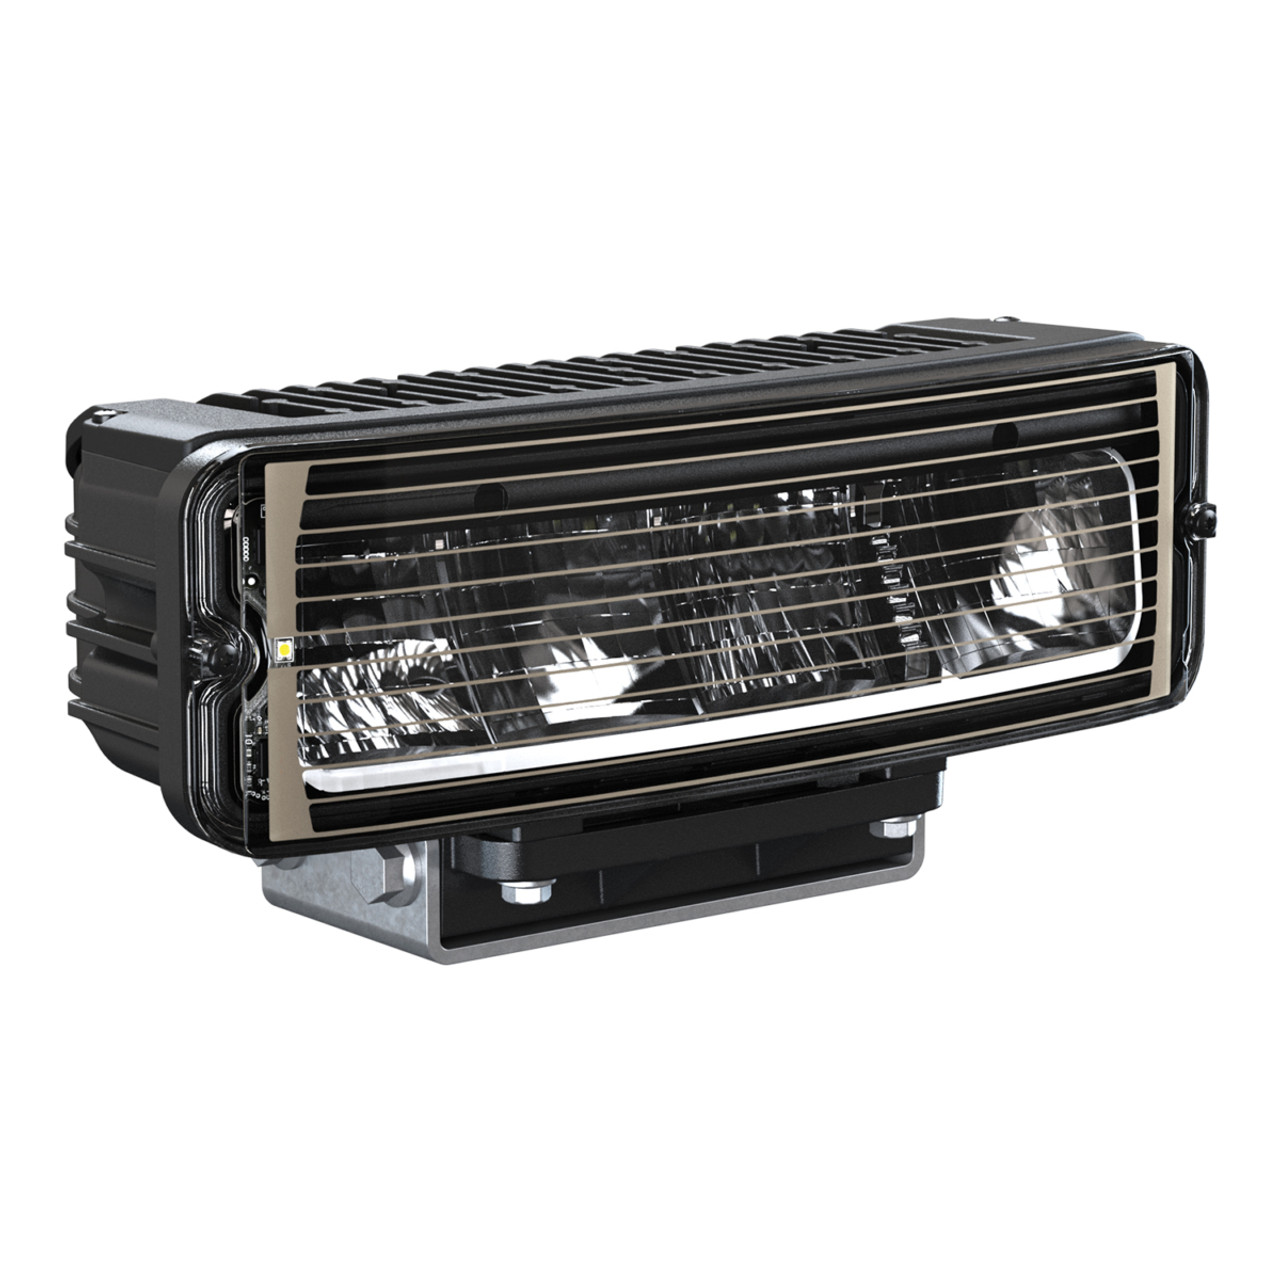 J.W. Speaker 12-24V DOT LED High Speed Heated Headlight - 2 Light Kit. Model 9800 HS